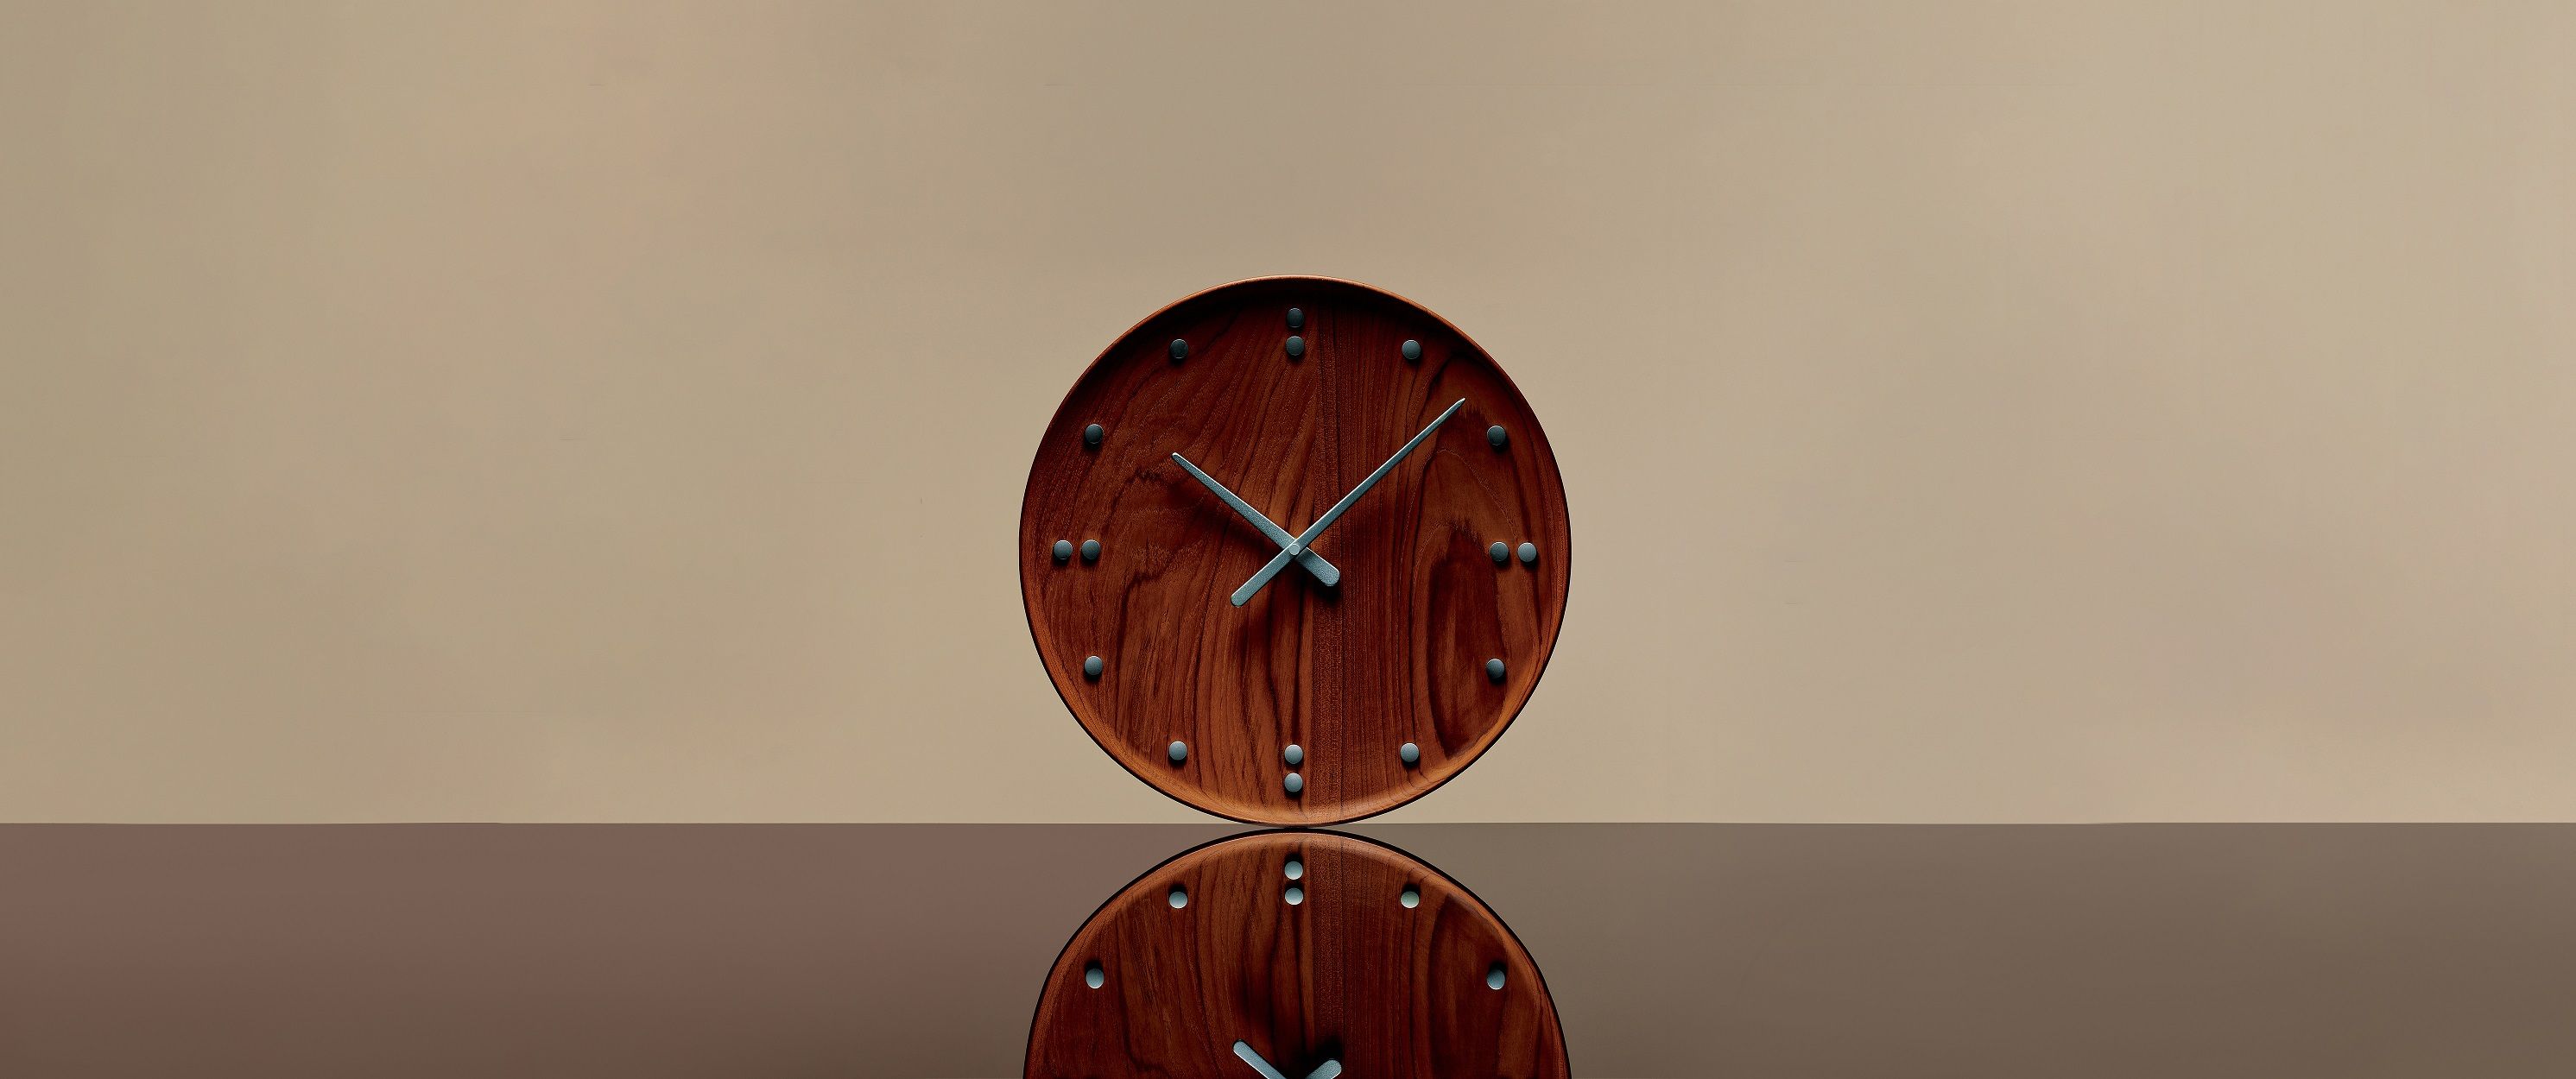 60年余りの時を待って一般製品化を遂げた、フィン・ユールの名作時計